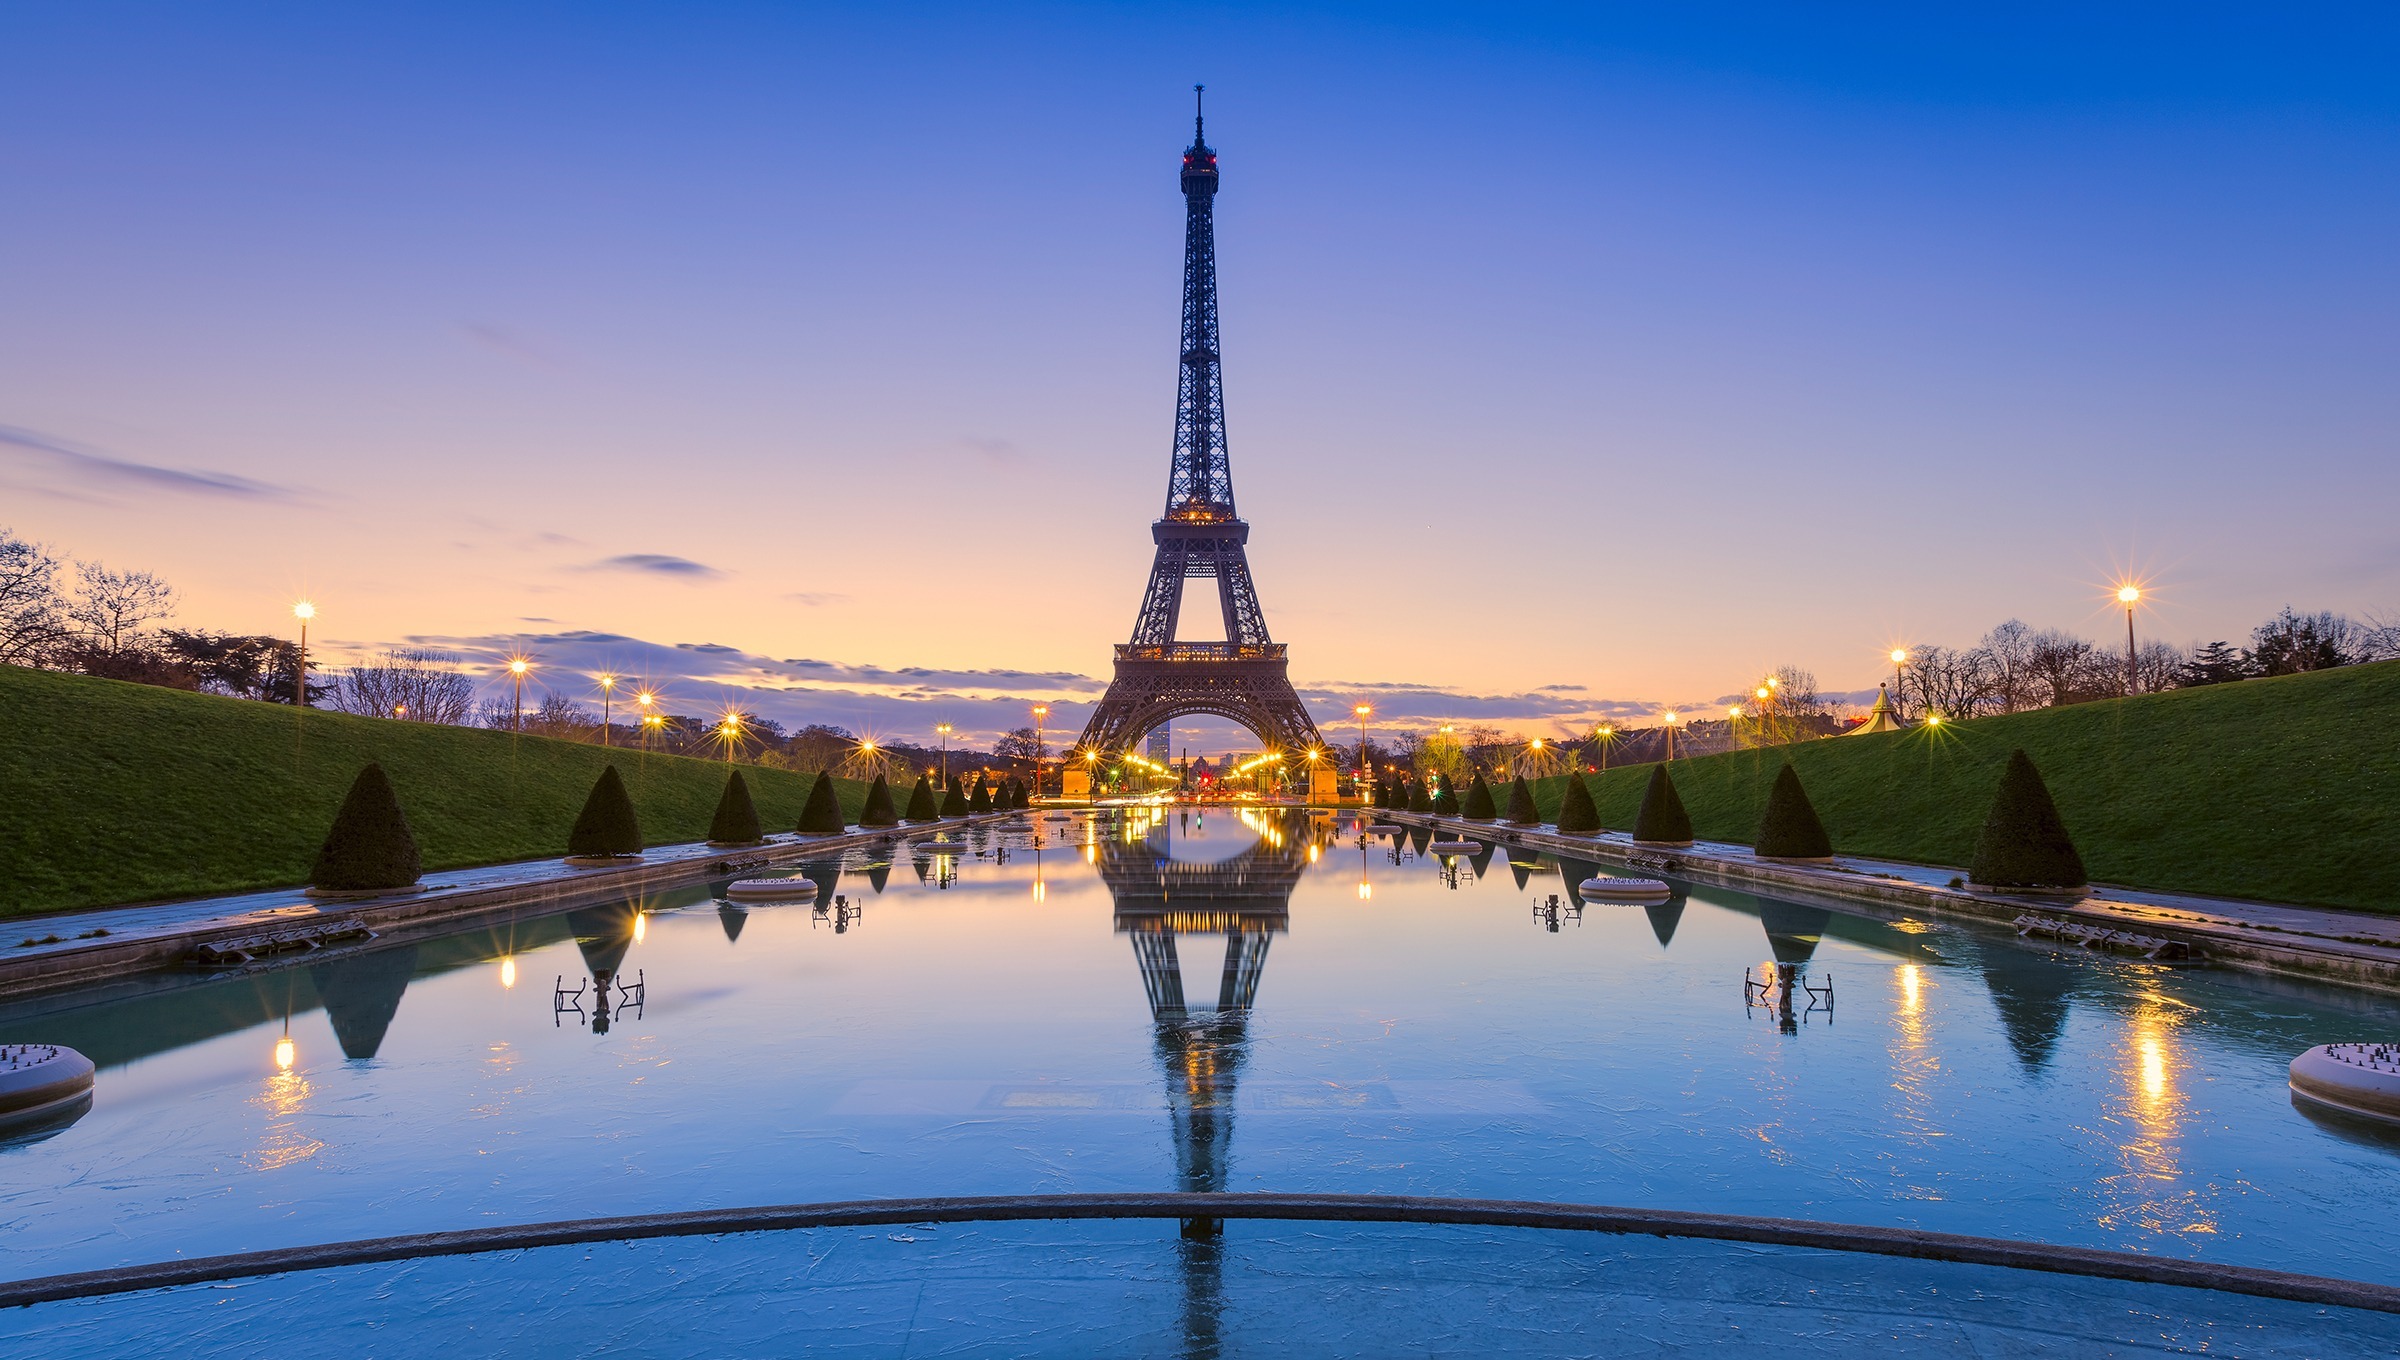 Eiffer tower in Paris